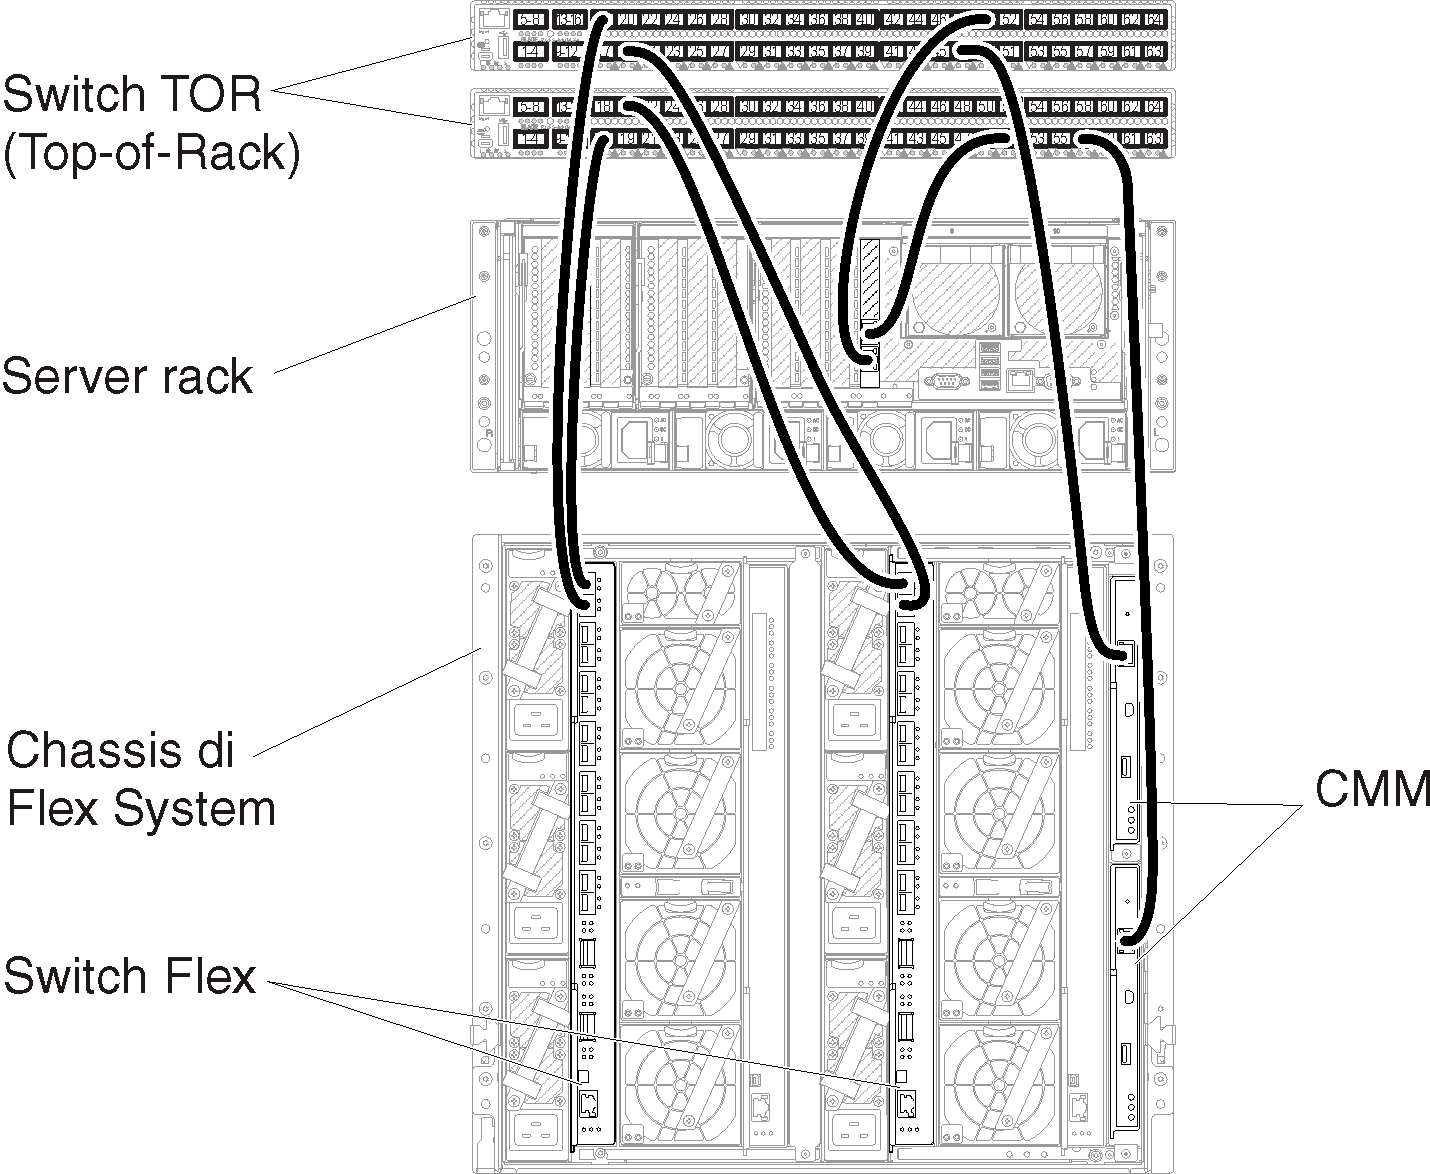 Mostra il cablaggio di chassis e server rack agli switch TOR (Top-of-Rack) per reti virtualmente separate di dati e gestione